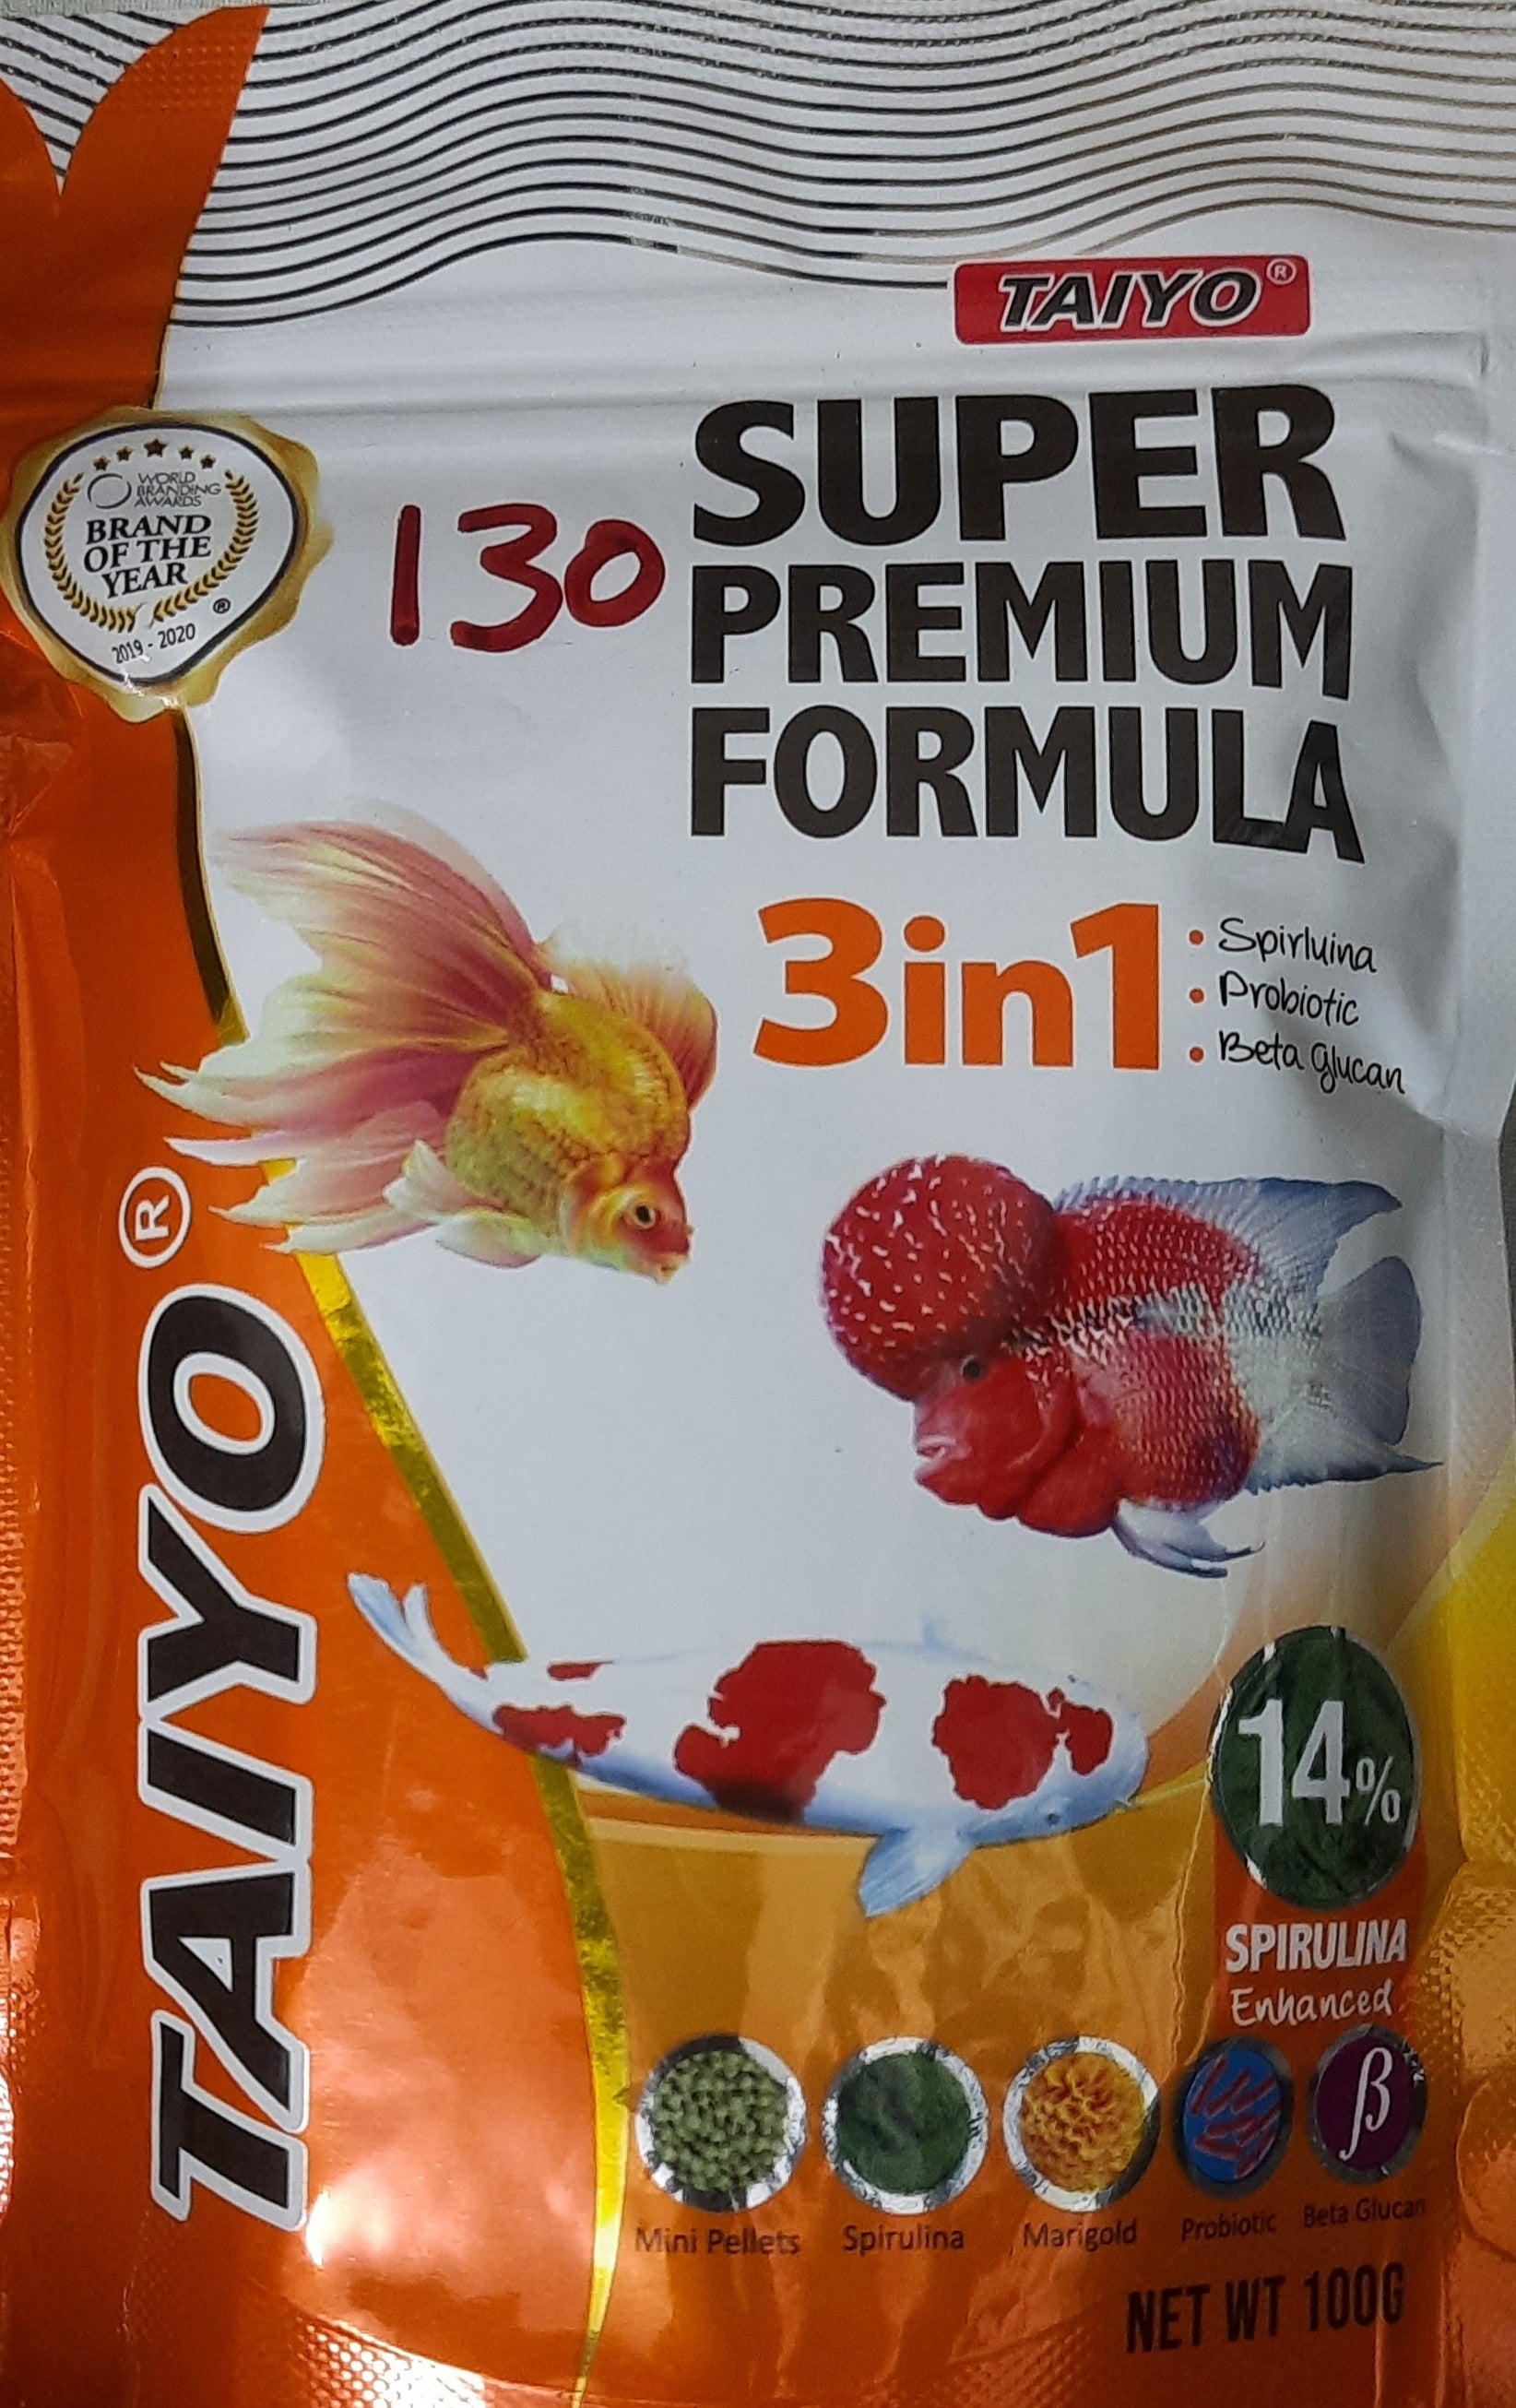 Taiyo 3 in 1 Super Premium Formula 100 Grams